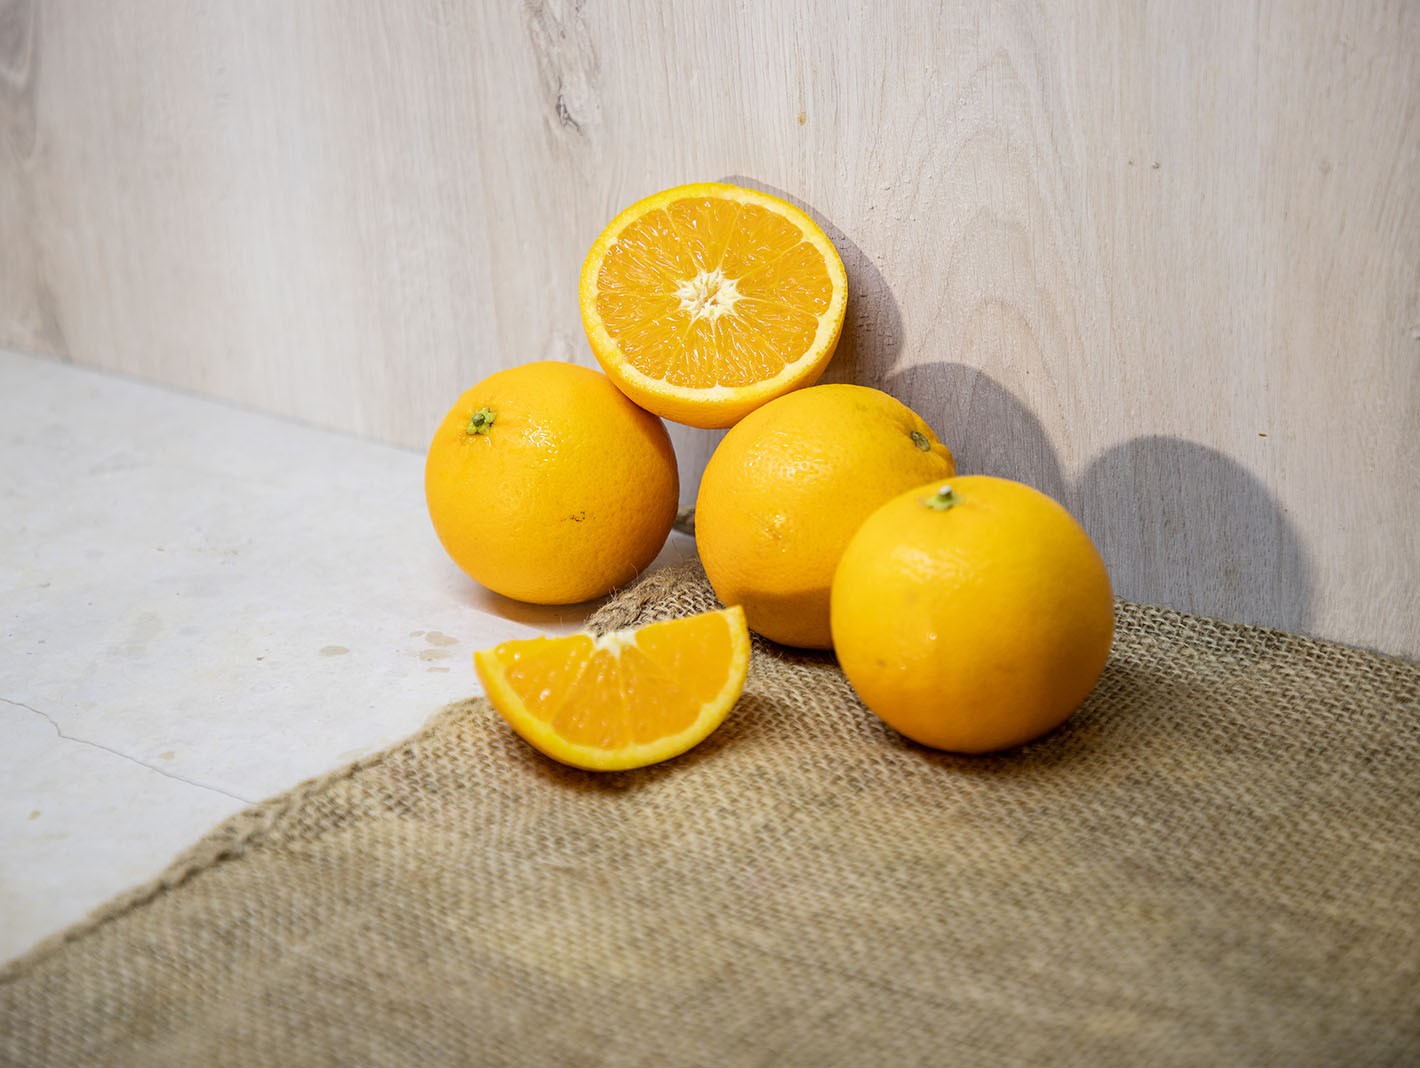 OranFrutta Valencia Oranges for fresh-squeezed juice